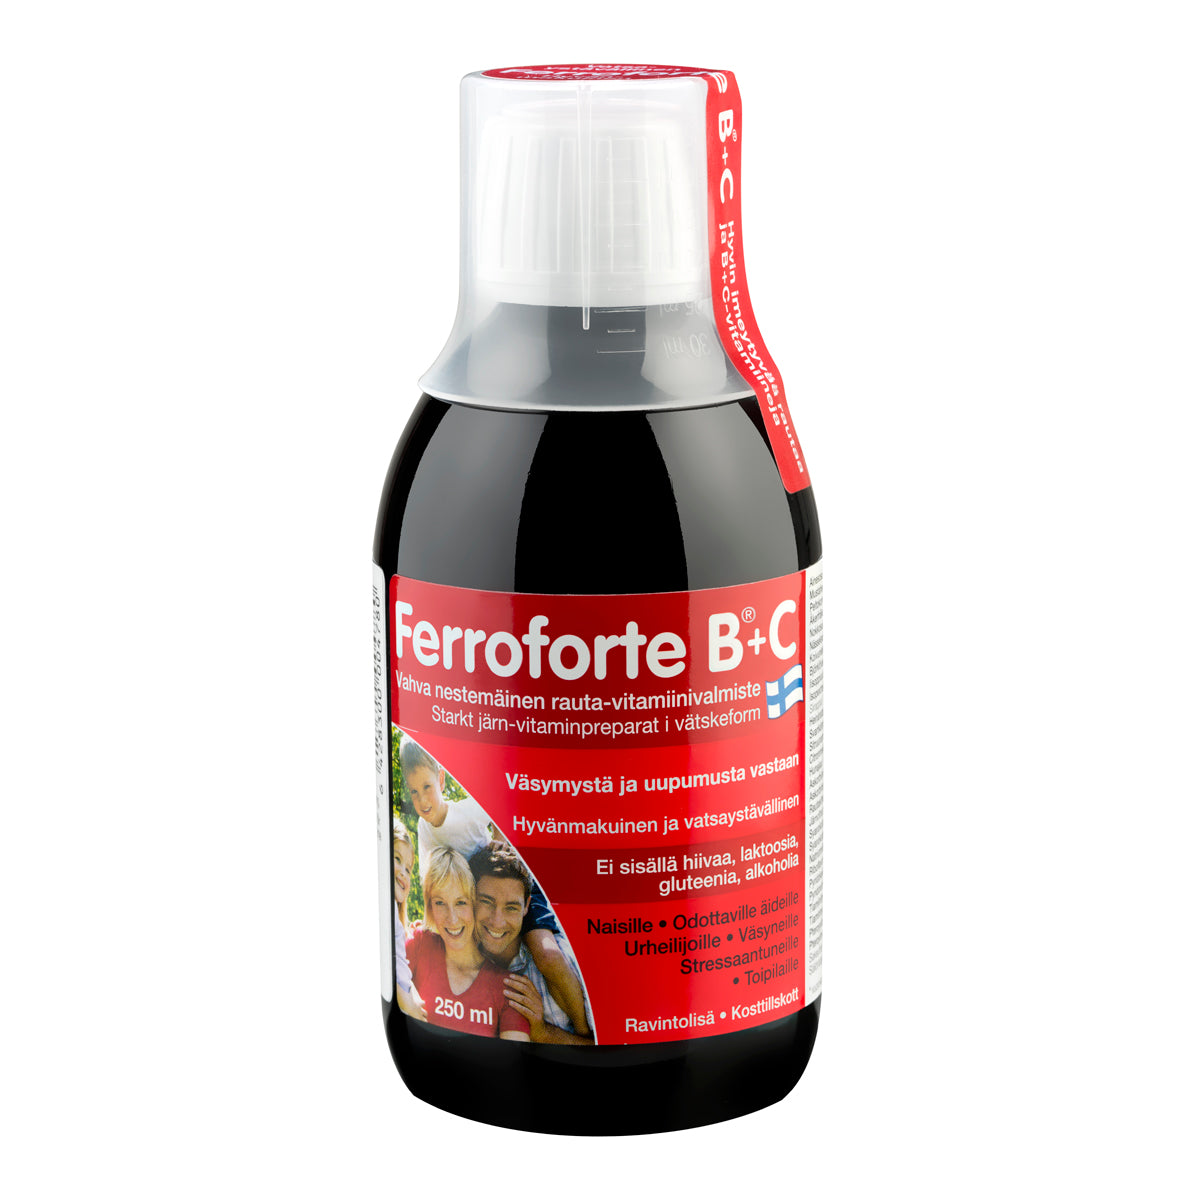 Ferroforte B + C - rauta-vitamiinivalmiste 250 ml - erä